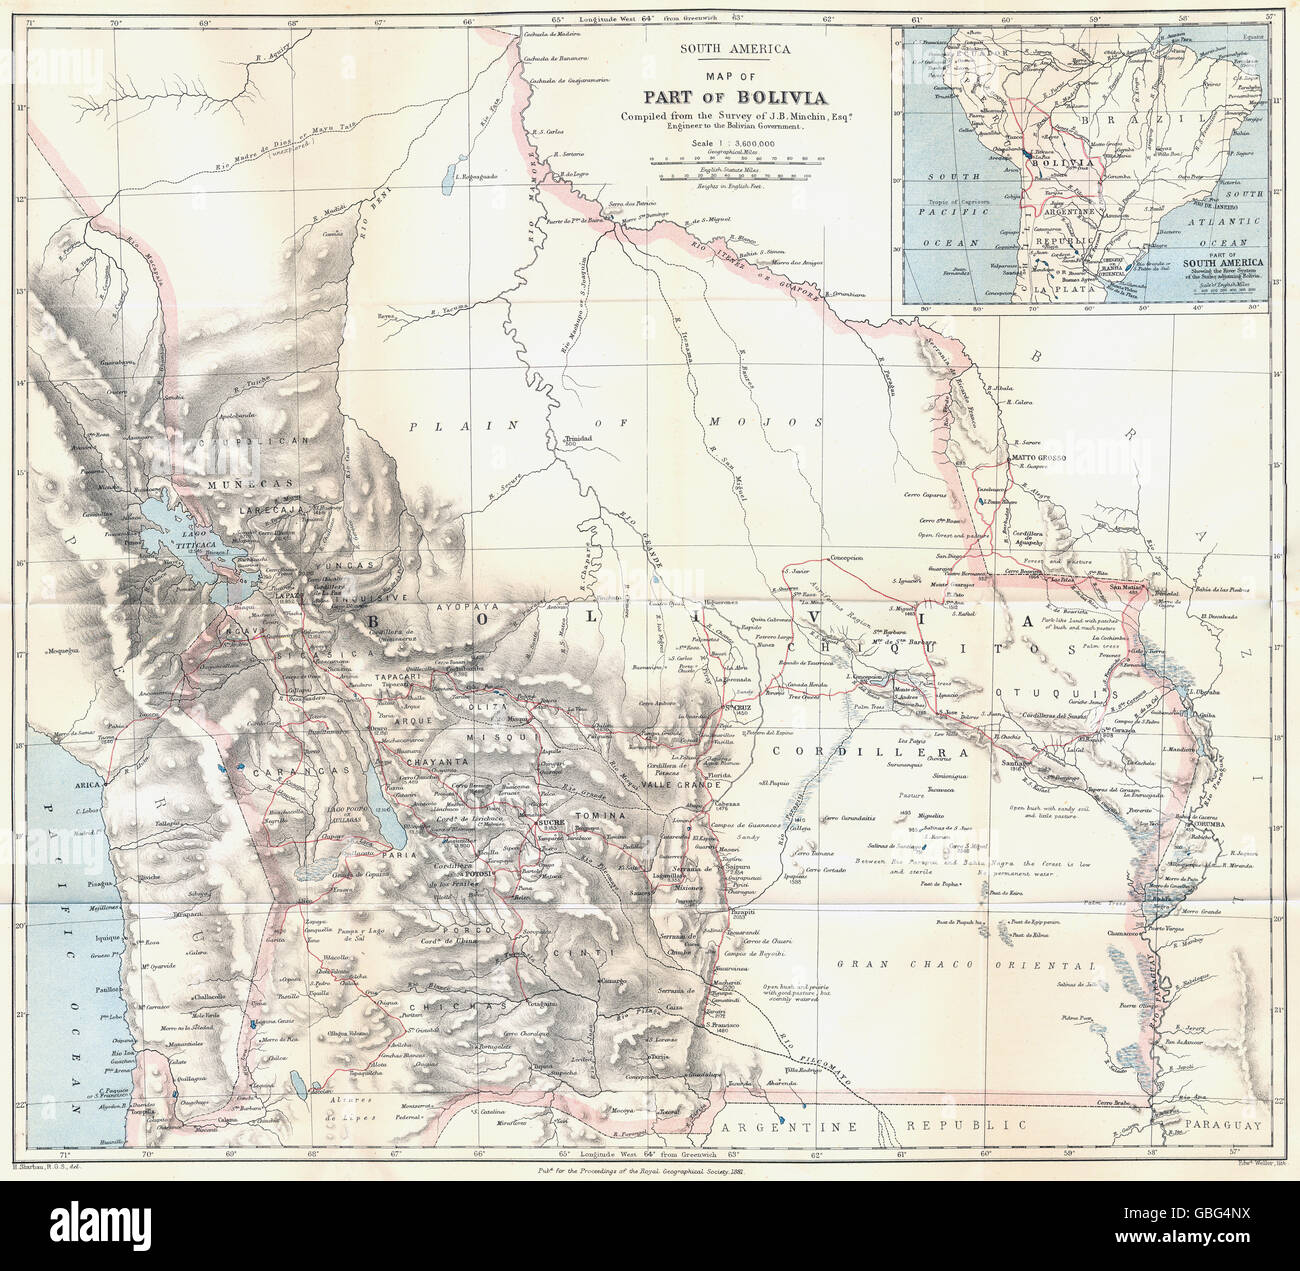 Bolivie : La Guerre du Pacifique une modification des frontières. Minchin interrogés. RGS, 1881 map Banque D'Images